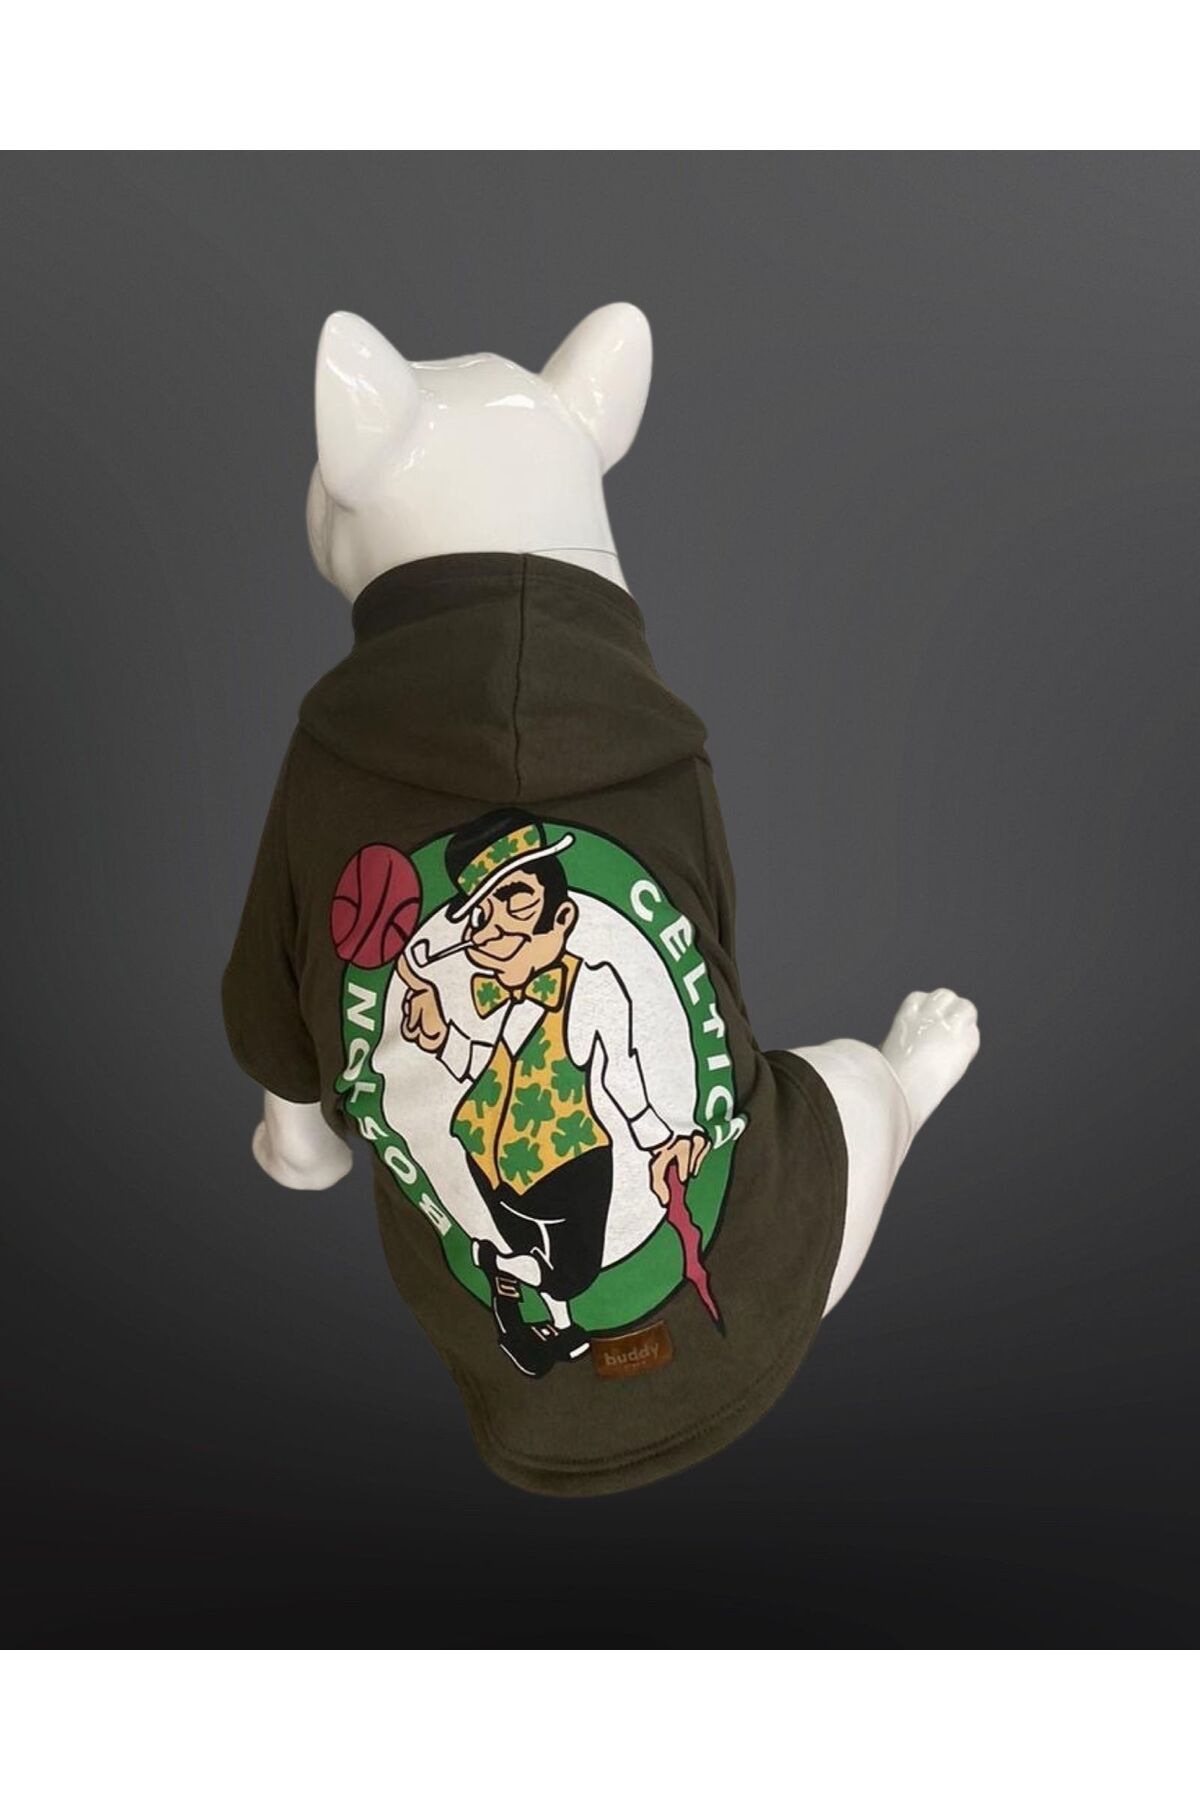 Buddy Store Kedi & Köpek Kıyafeti Sweatshirt - Boston Celtics Baskılı Haki Yeşili Sweatshirt - S Beden